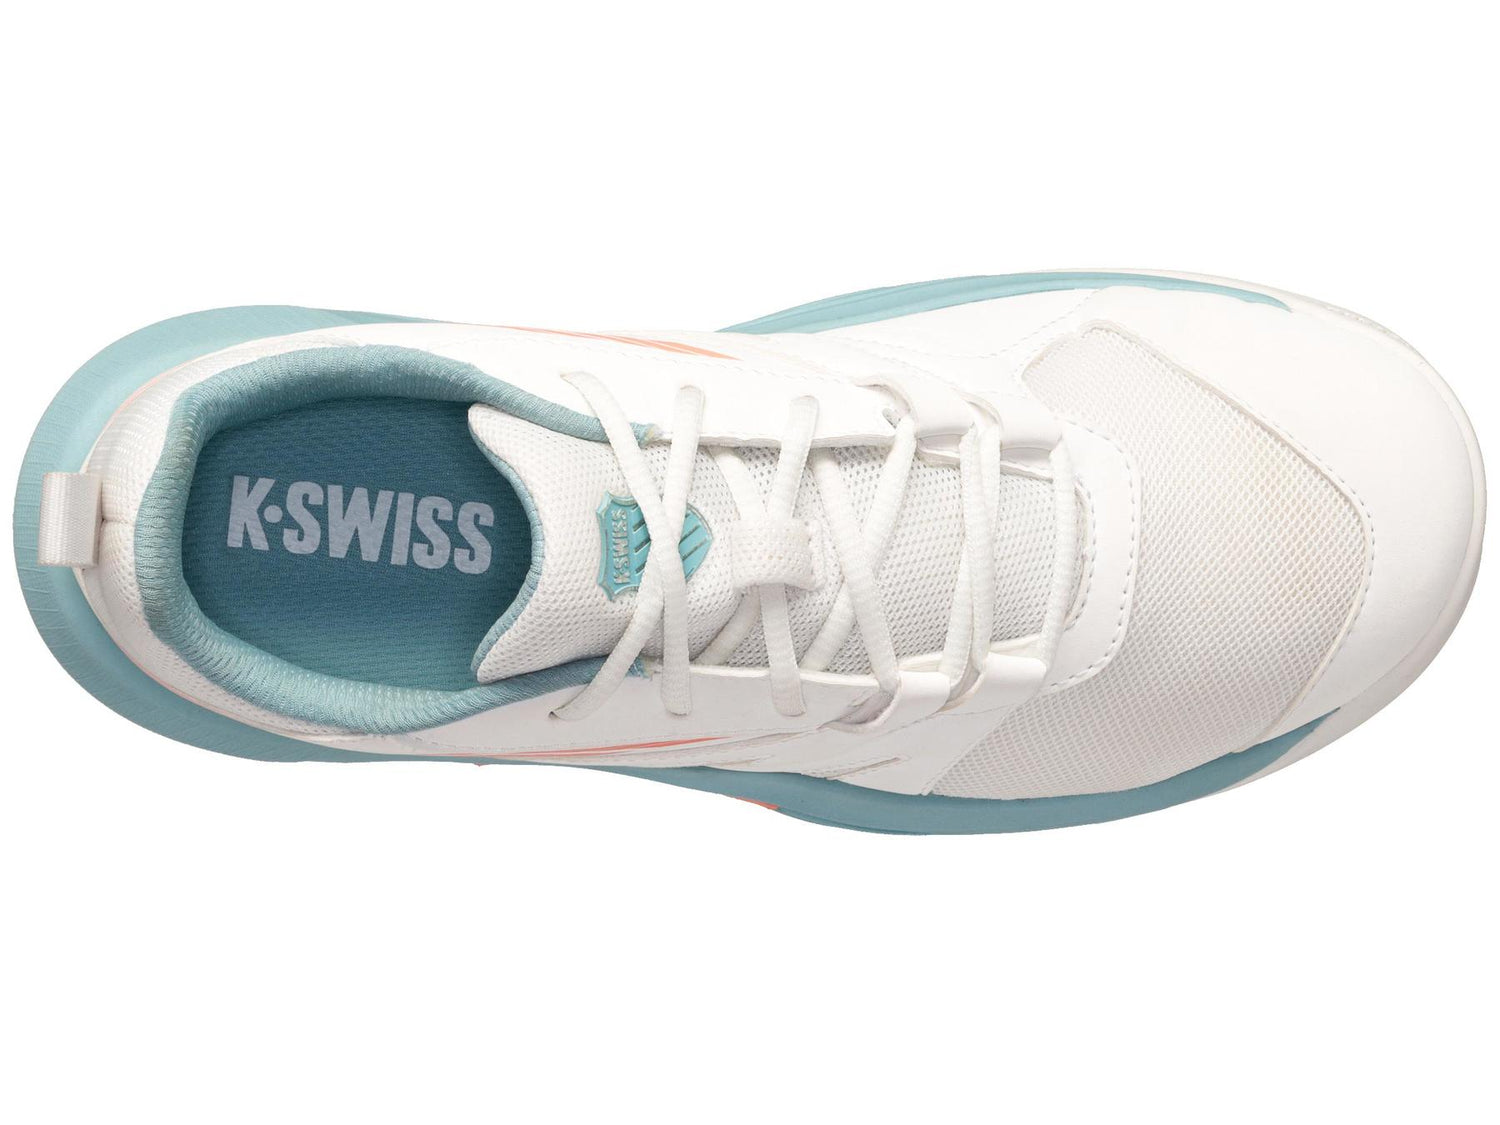 K-Swiss Kids SpeedTrac Tennis Shoes in Blanc De Blanc/Nile Blue/Desert Flower